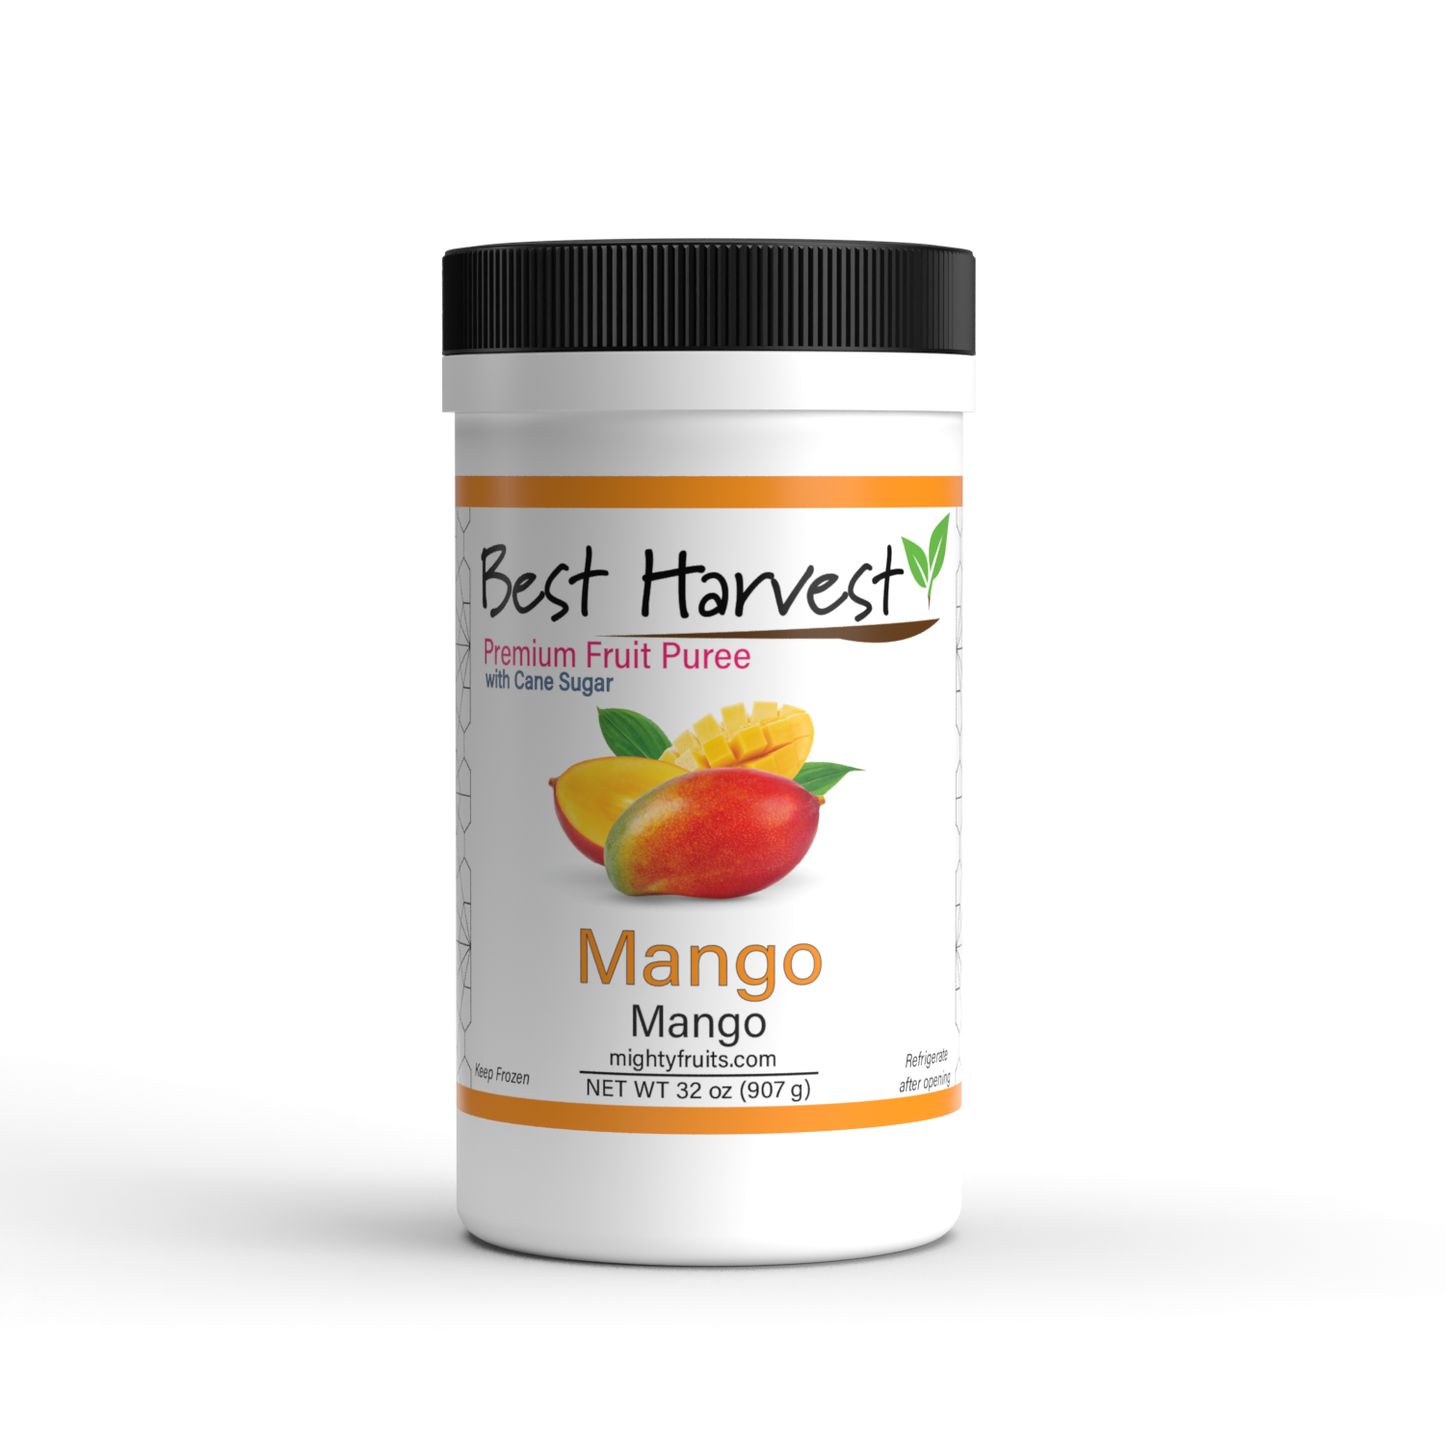 MANGO - BEST HARVEST - Premium Fruit Puree